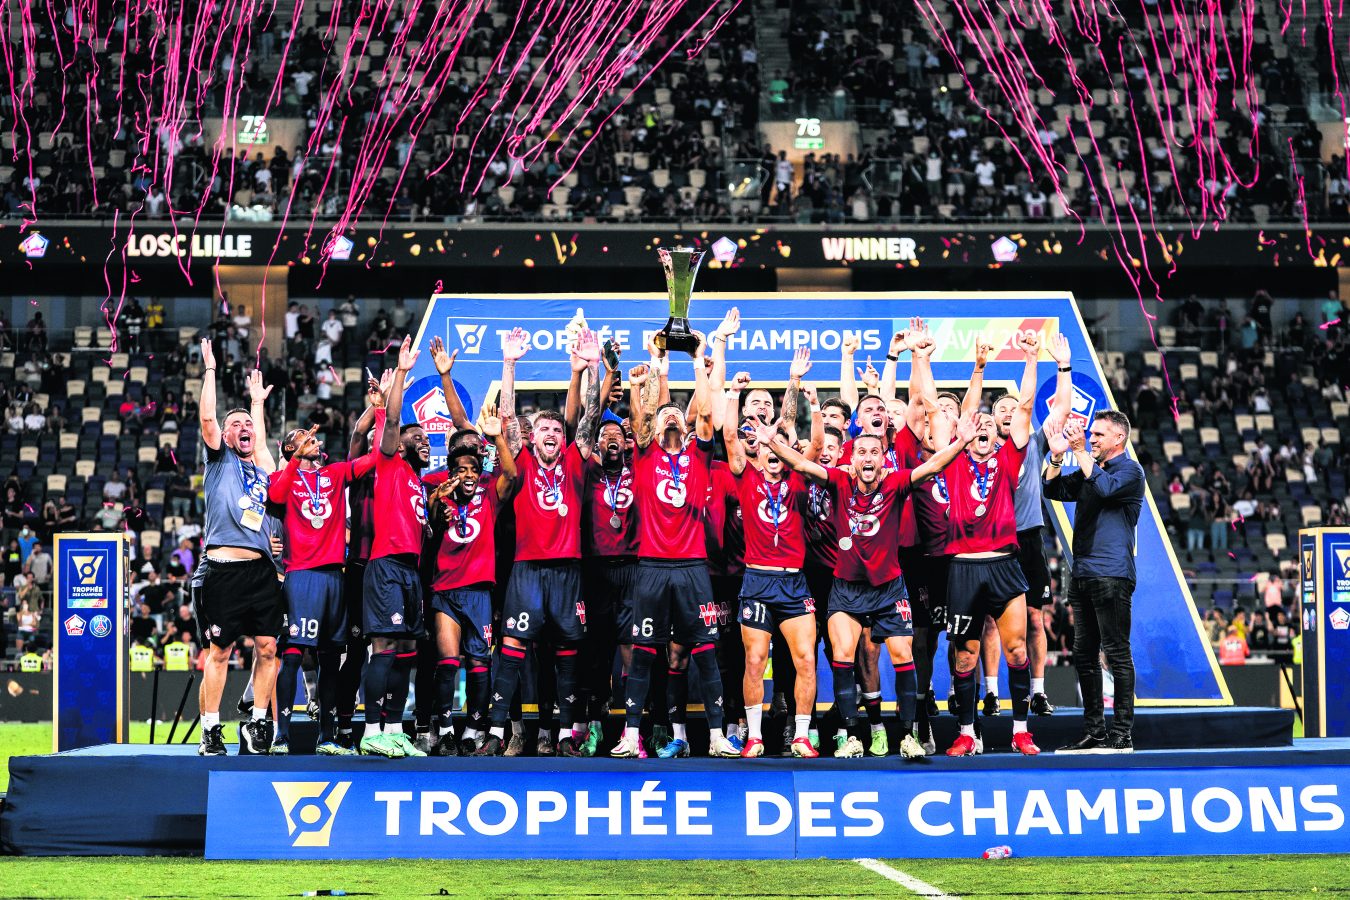 Lille Fransa’da 10 yıl aradan sonra şampiyonluk ipini göğüslerken, bu başarıda milli futbolcular Yusuf Yazıcı, Burak Yılmaz ve Zeki Çelik’in performansları önemli katkı sağladı.